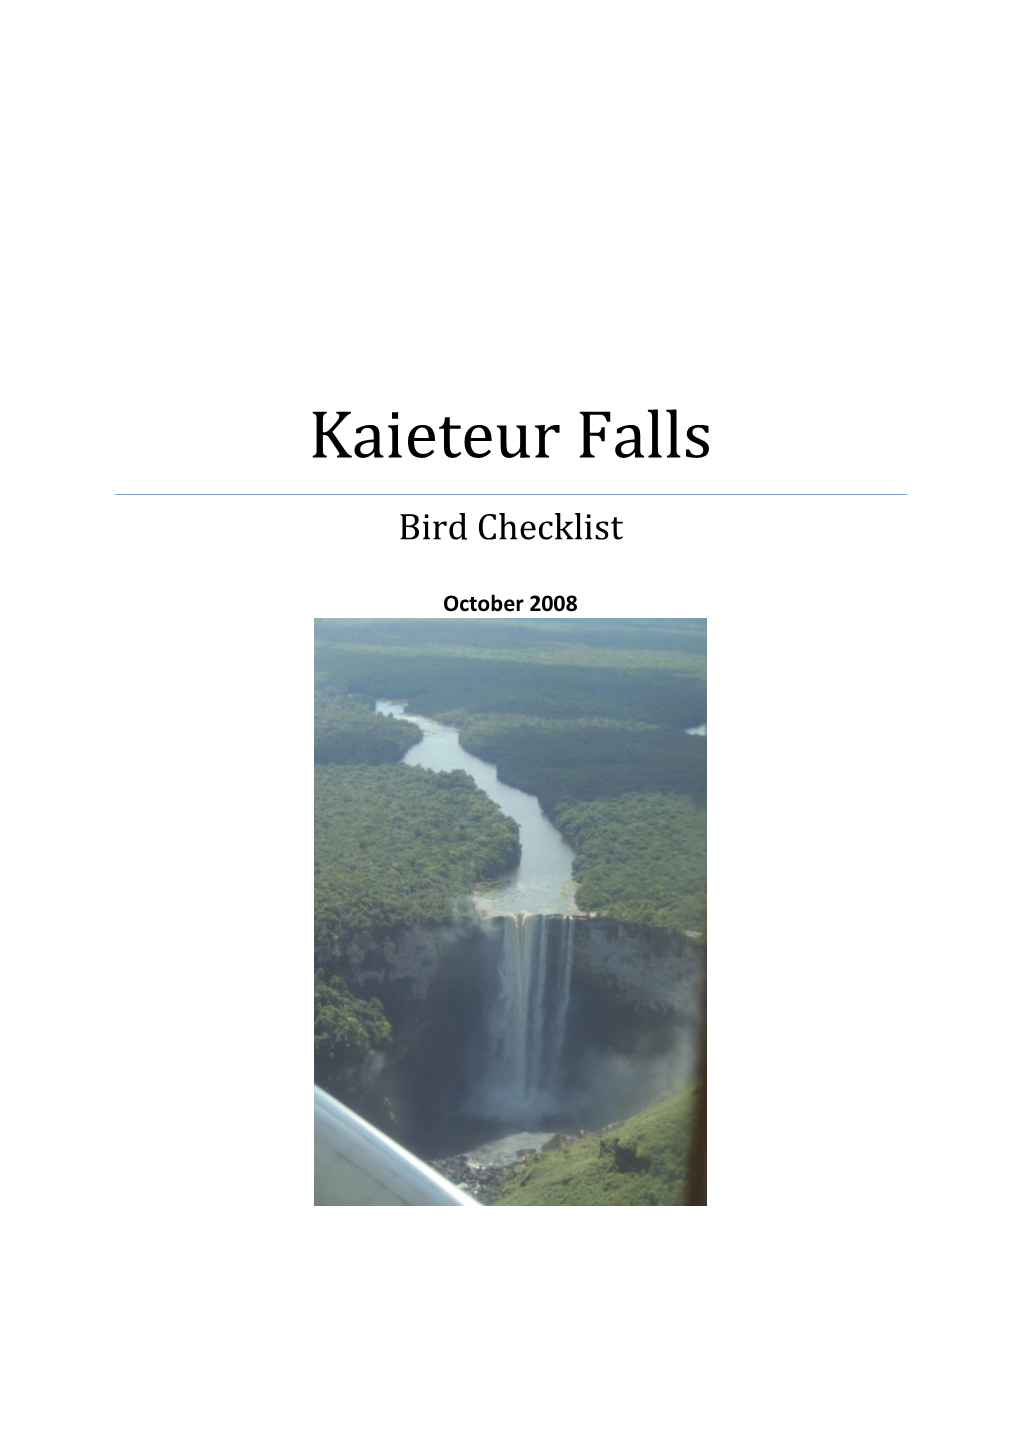 Kaieteur Falls Bird Checklist